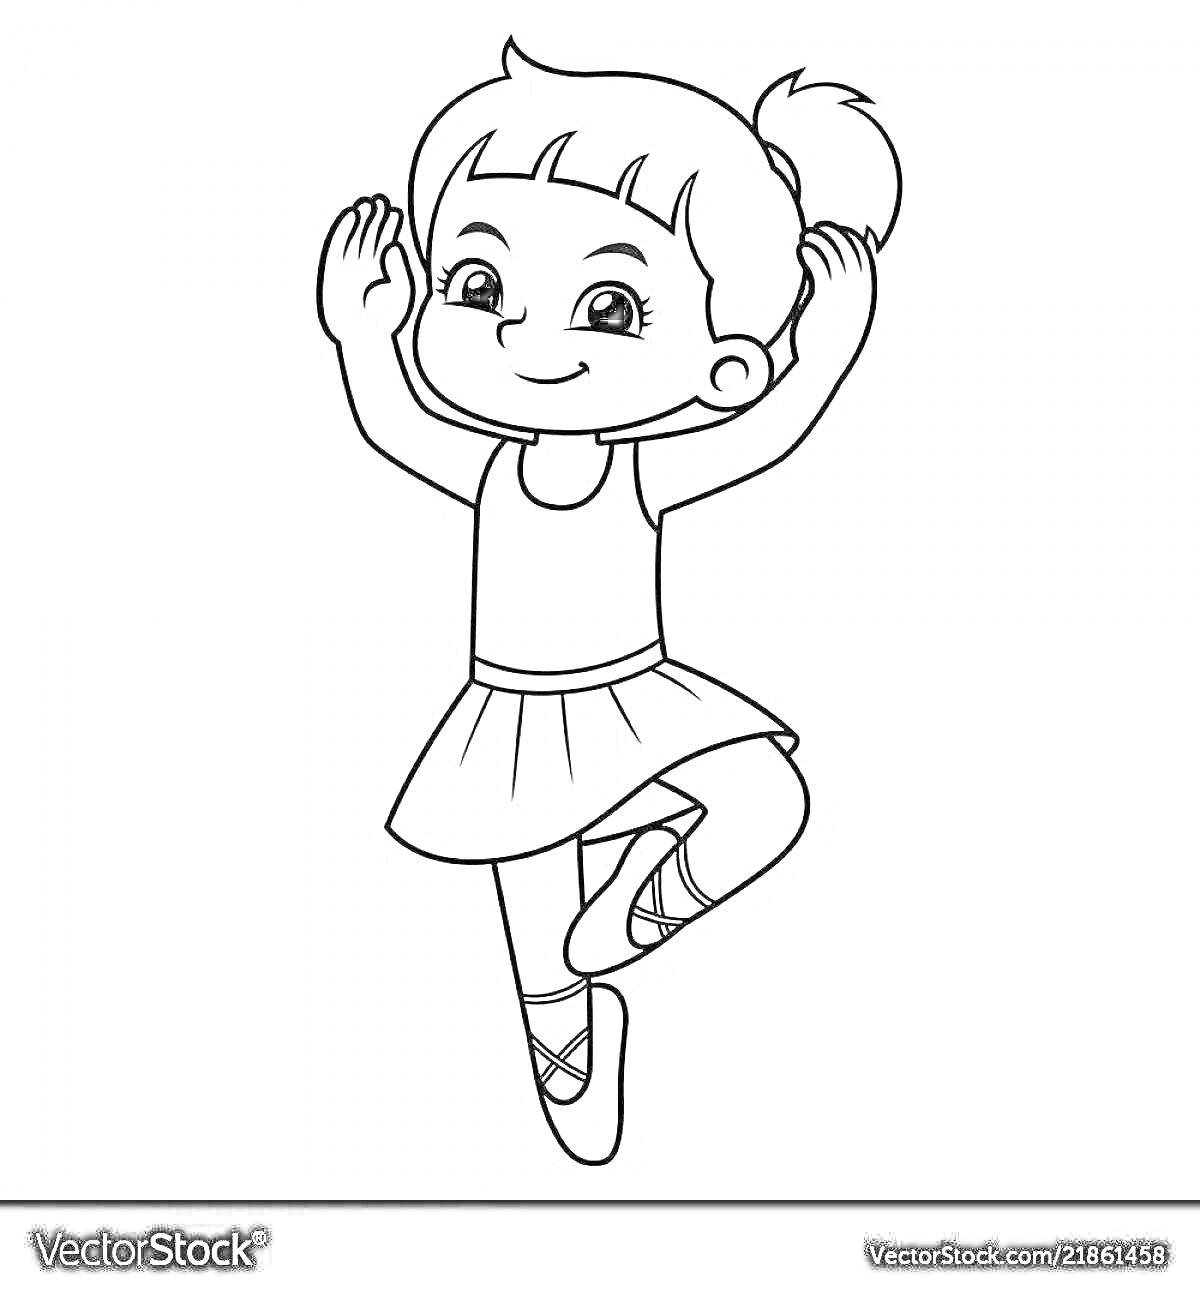 Раскраска Танцующая девочка в балетной пачке и пуантах с хвостиком на голове